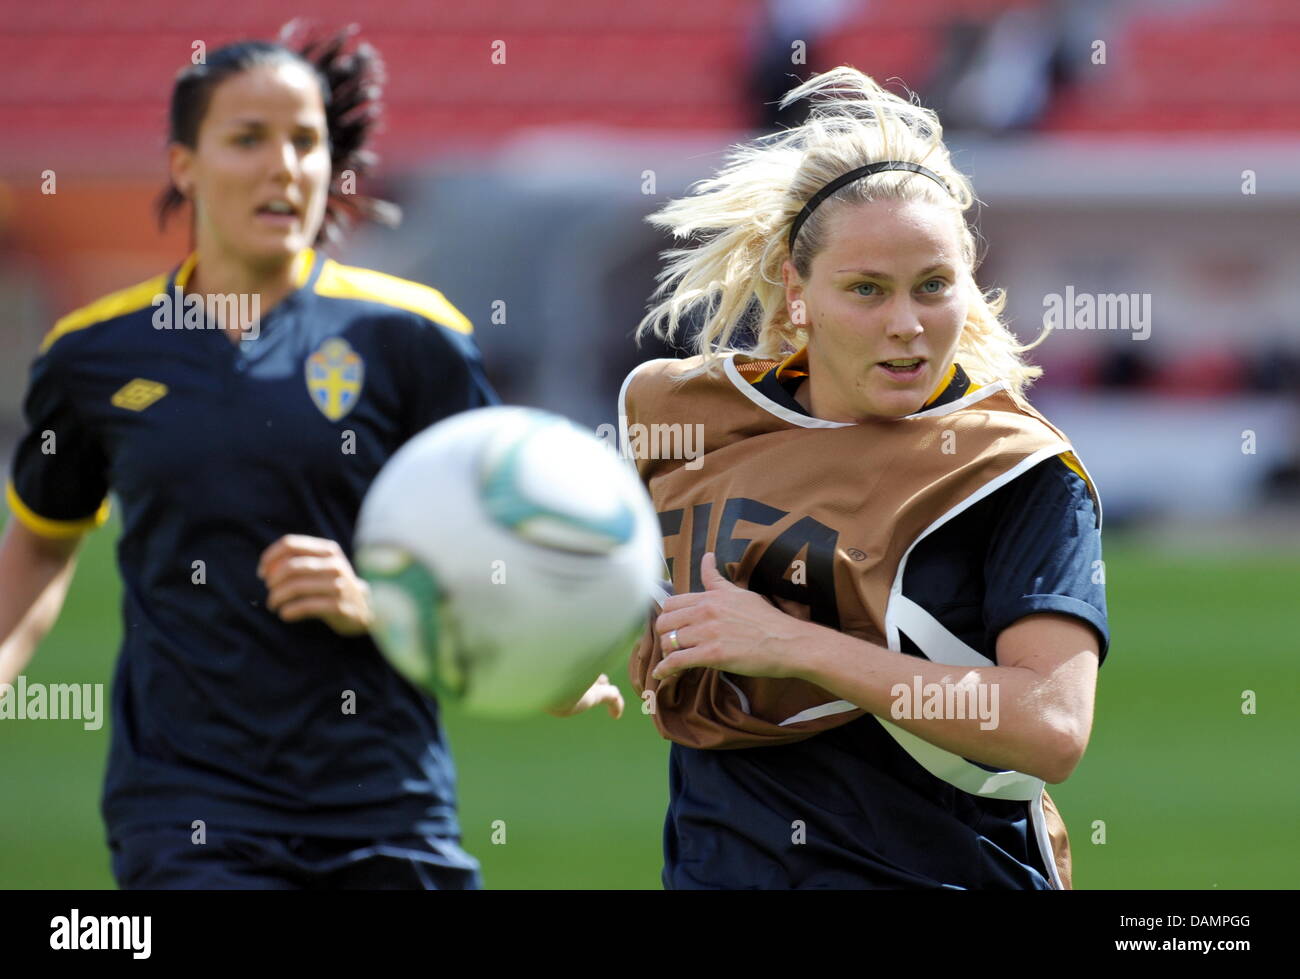 In Svezia il Lisa Dahlkvist (R) e Jessica Landstrom giocare la palla durante la pratica presso la Coppa del Mondo Donne stadium di Leverkusen, Germania, 27 giugno 2011. La Svezia gioca contro la Columbia nel gruppo C il 28 giugno 2011. Foto: FEDERICO GAMBARINI Foto Stock